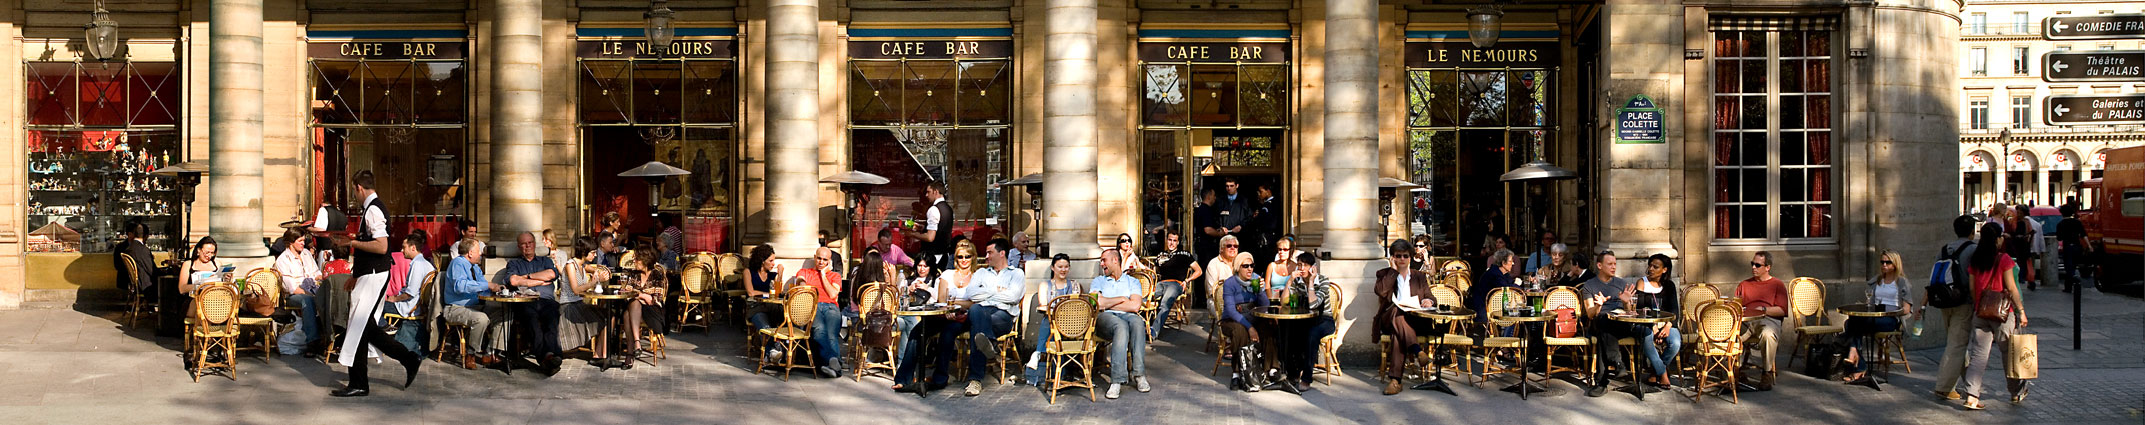 Place Colette, Paris, 2006